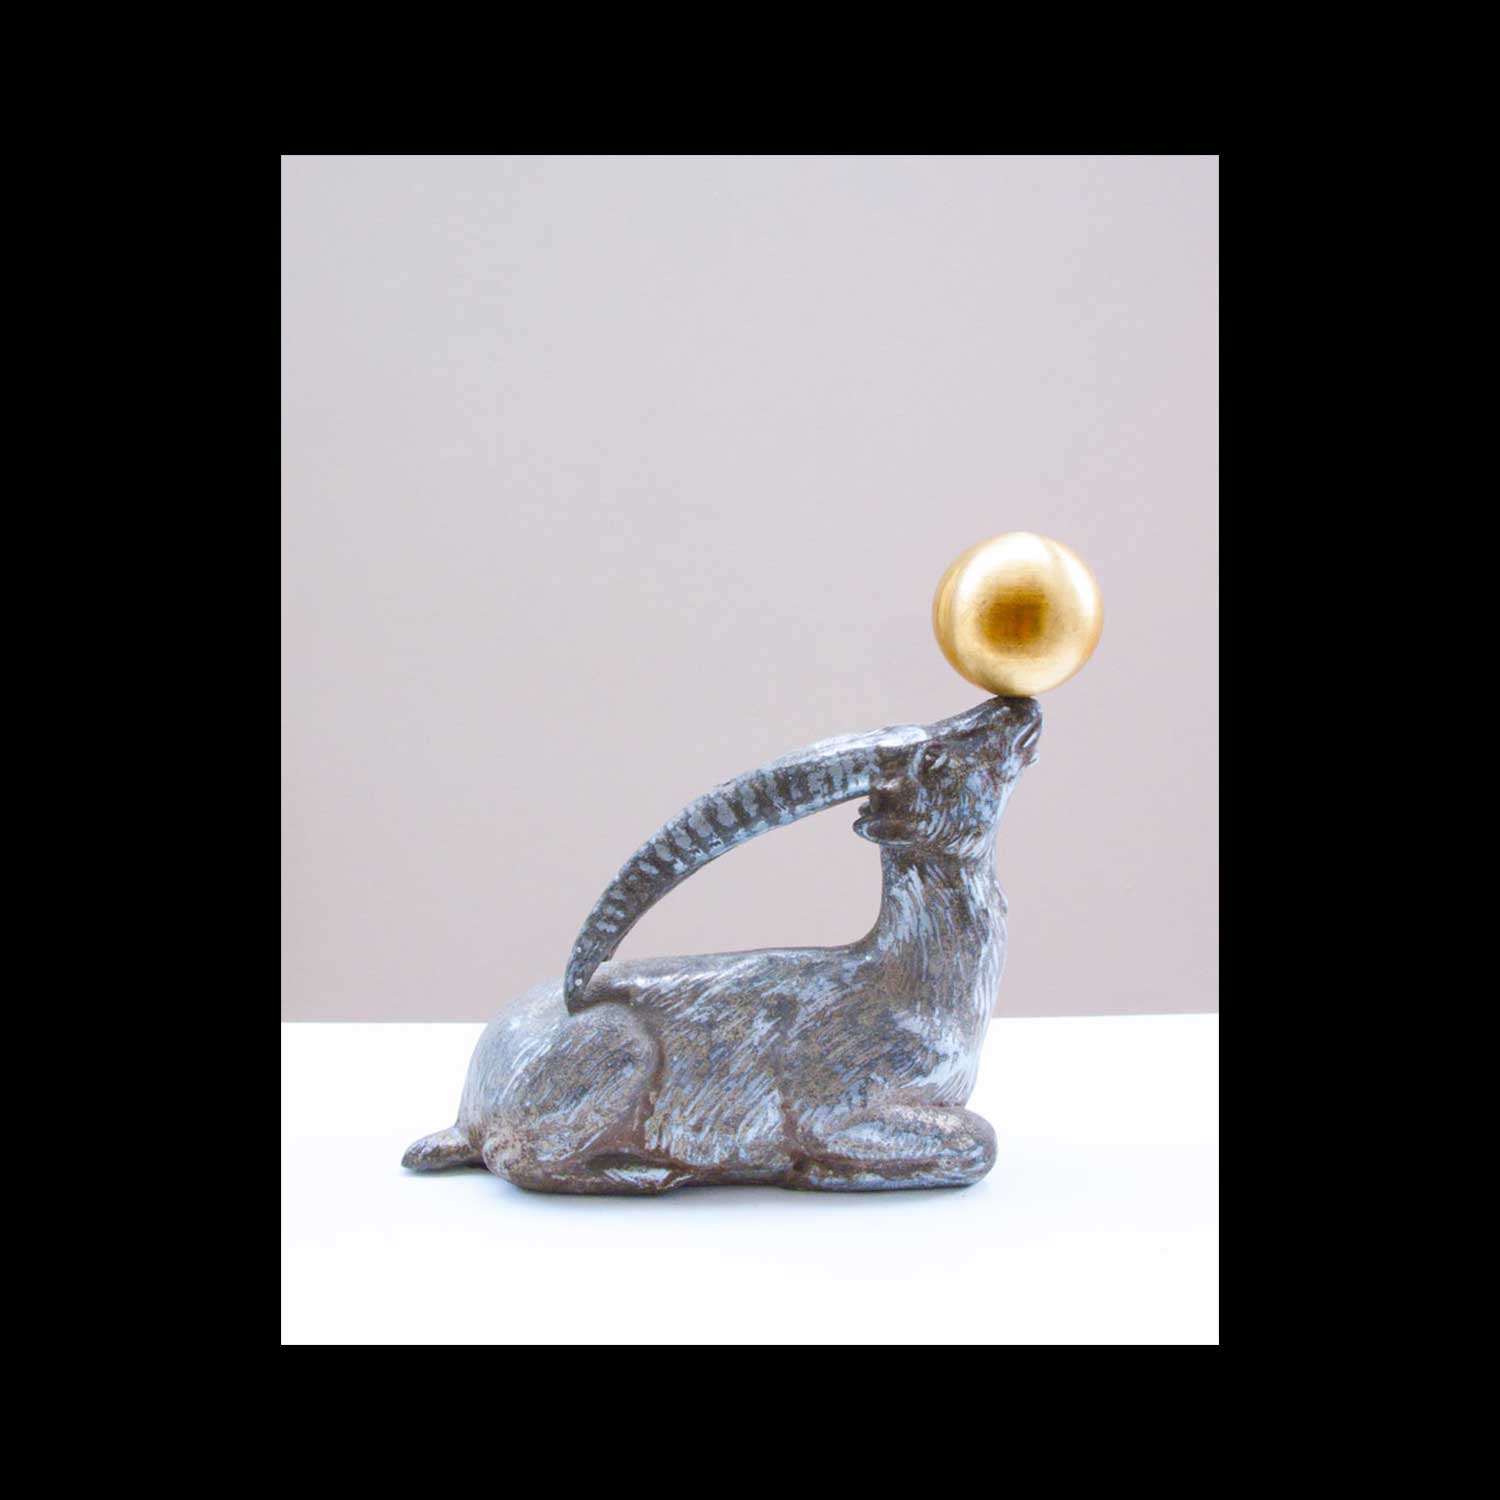 Stéphane Vigny, Bouquetin imitant l’otarie, 2015, étain, laiton, 15 x 14 cm. Pièce unique